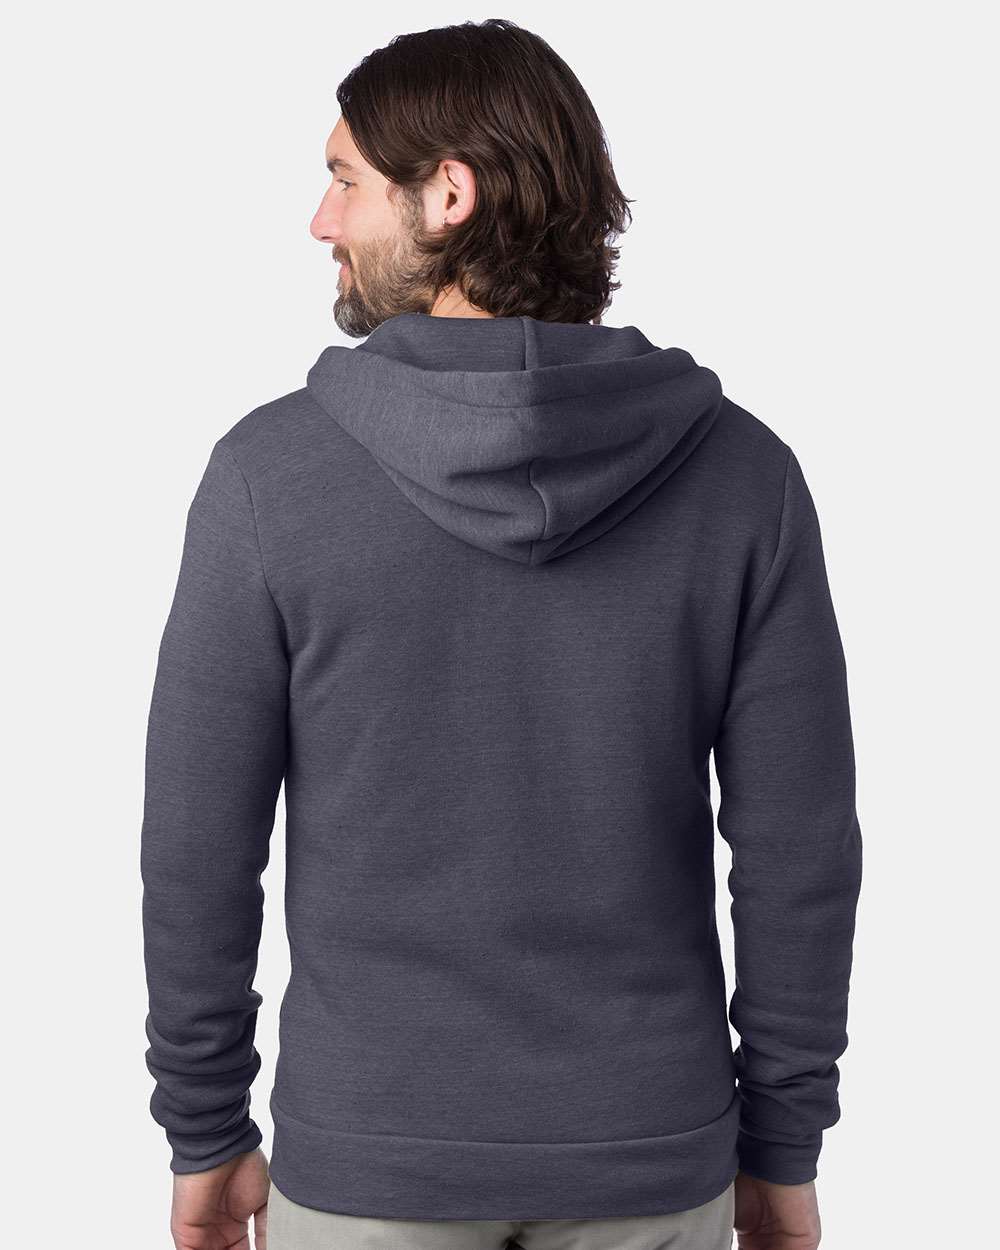 Alternative Rocky Eco-Fleece Full-Zip Hooded Sweatshirt 9590 #colormdl_Eco True Navy